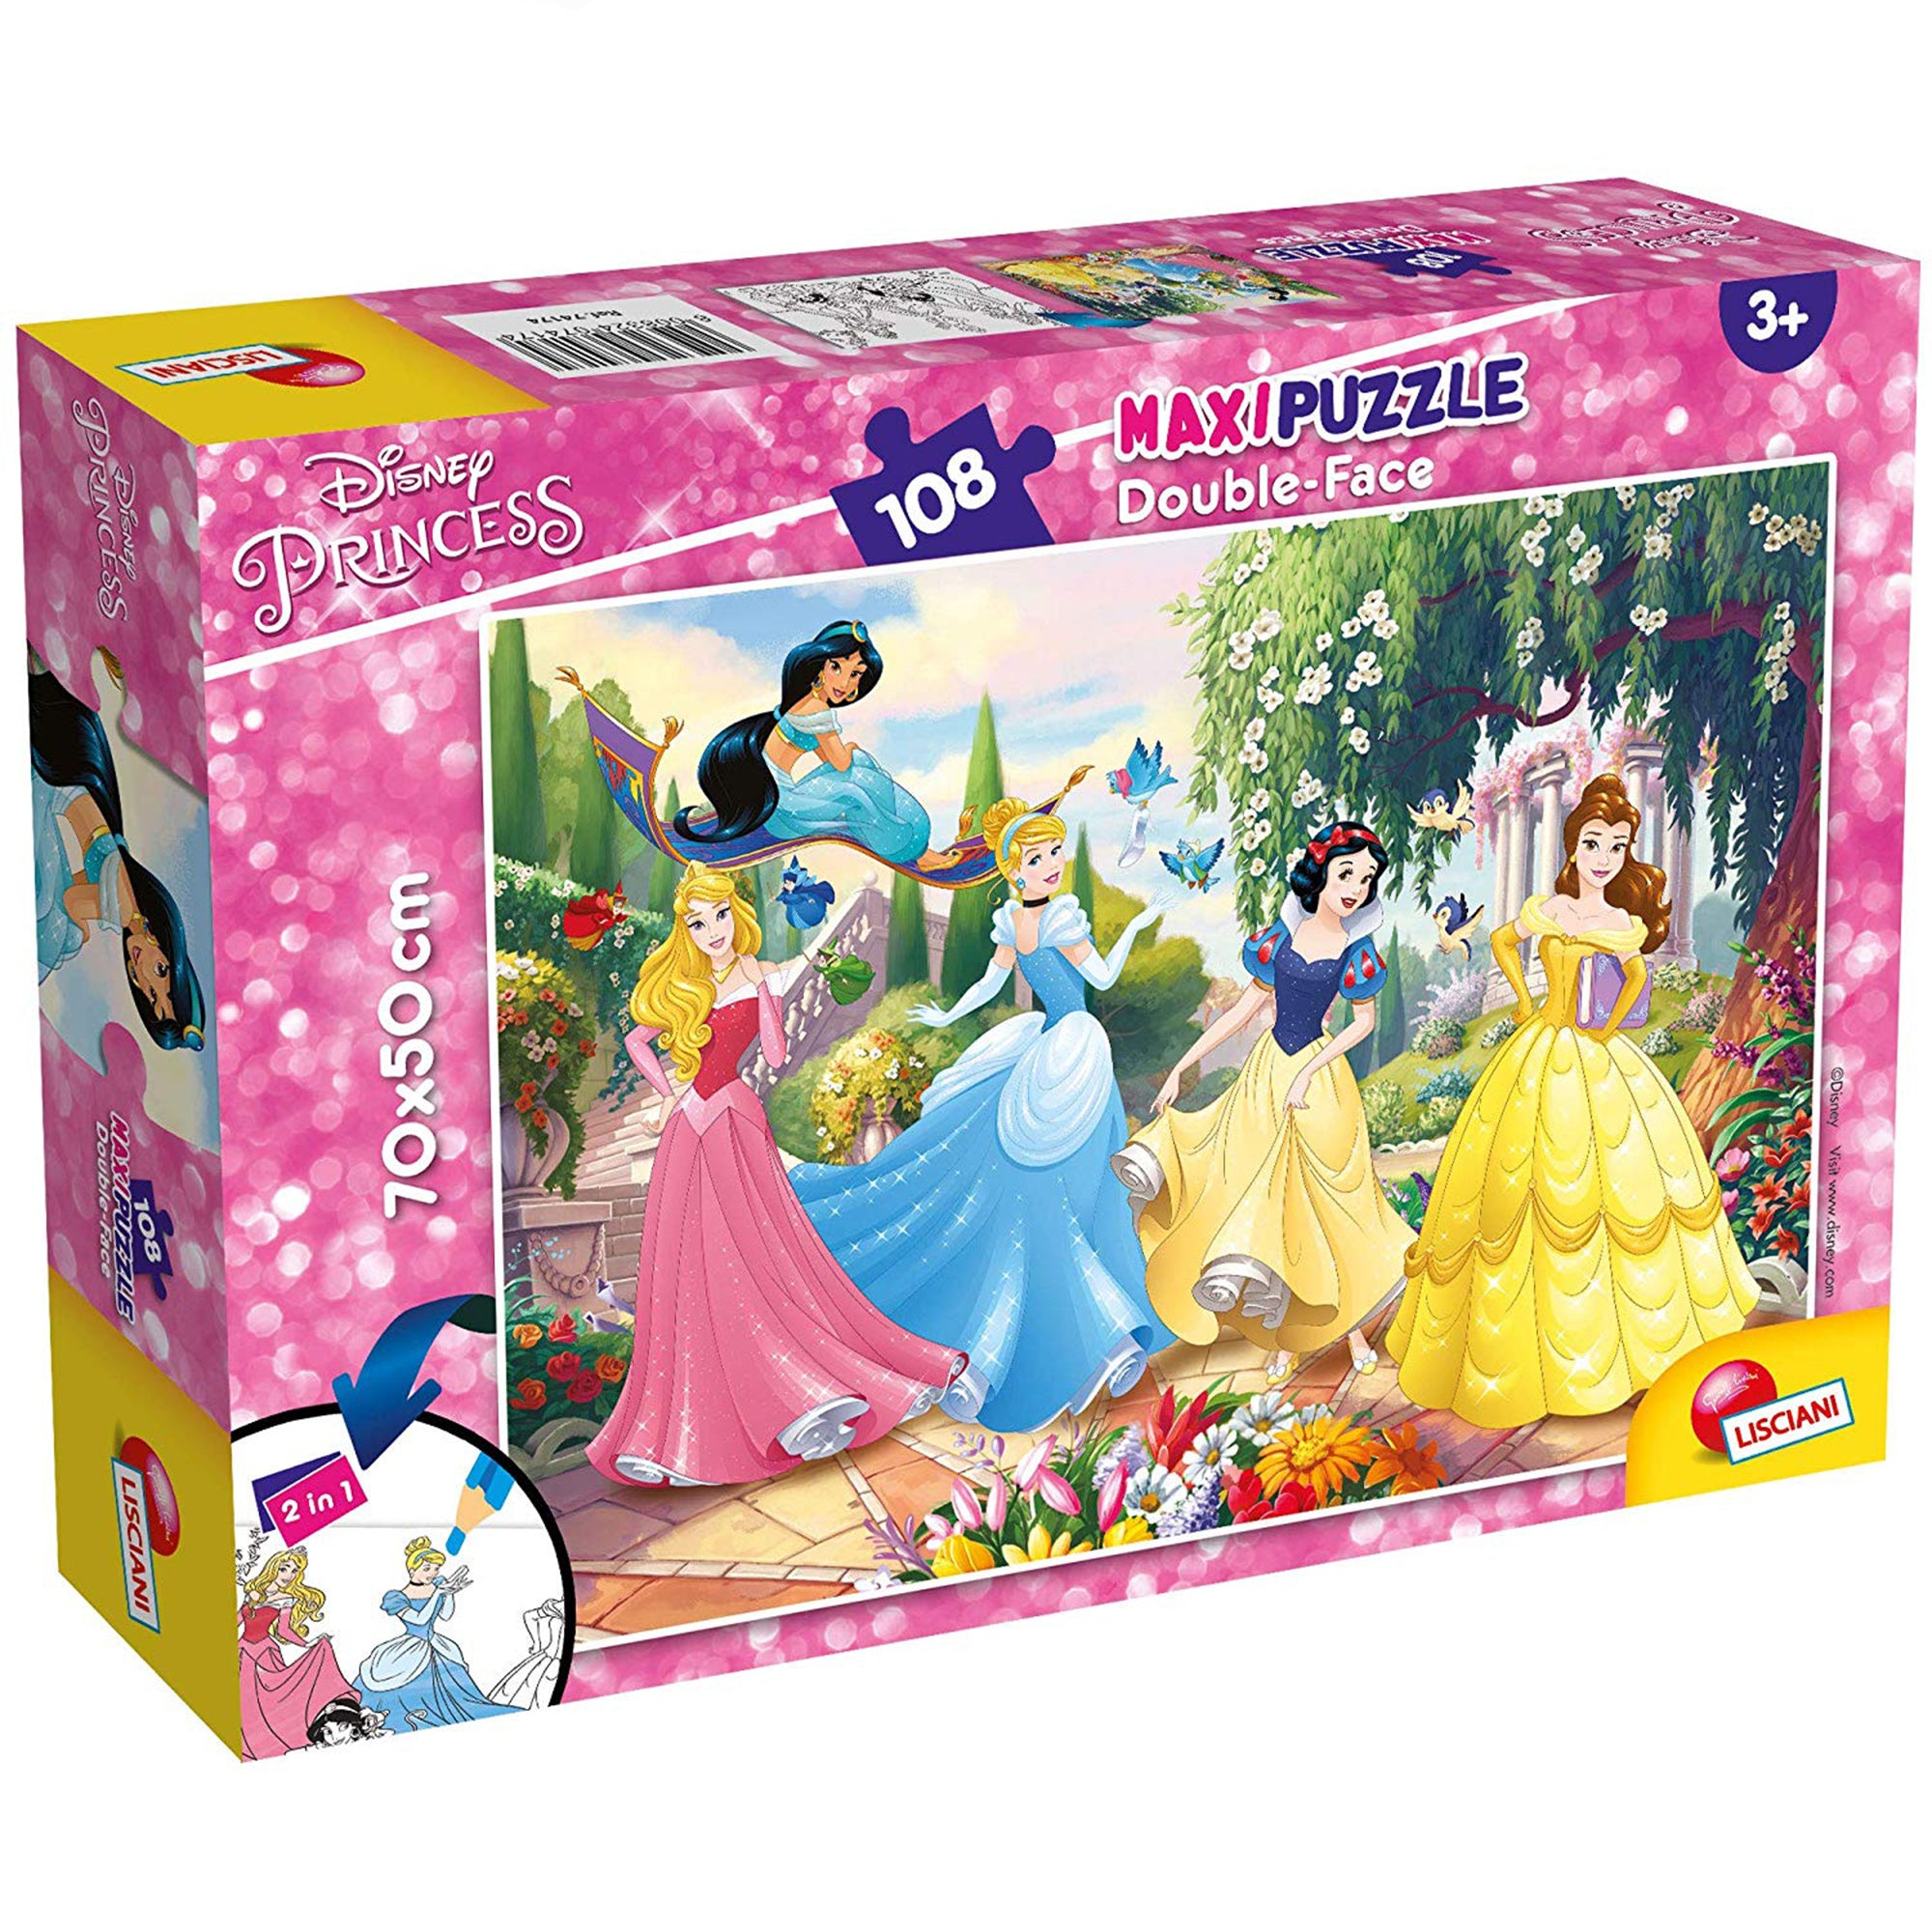 Puzzle maxi double-face Disney Principesse 108 pz retro colorabile gioco 1451